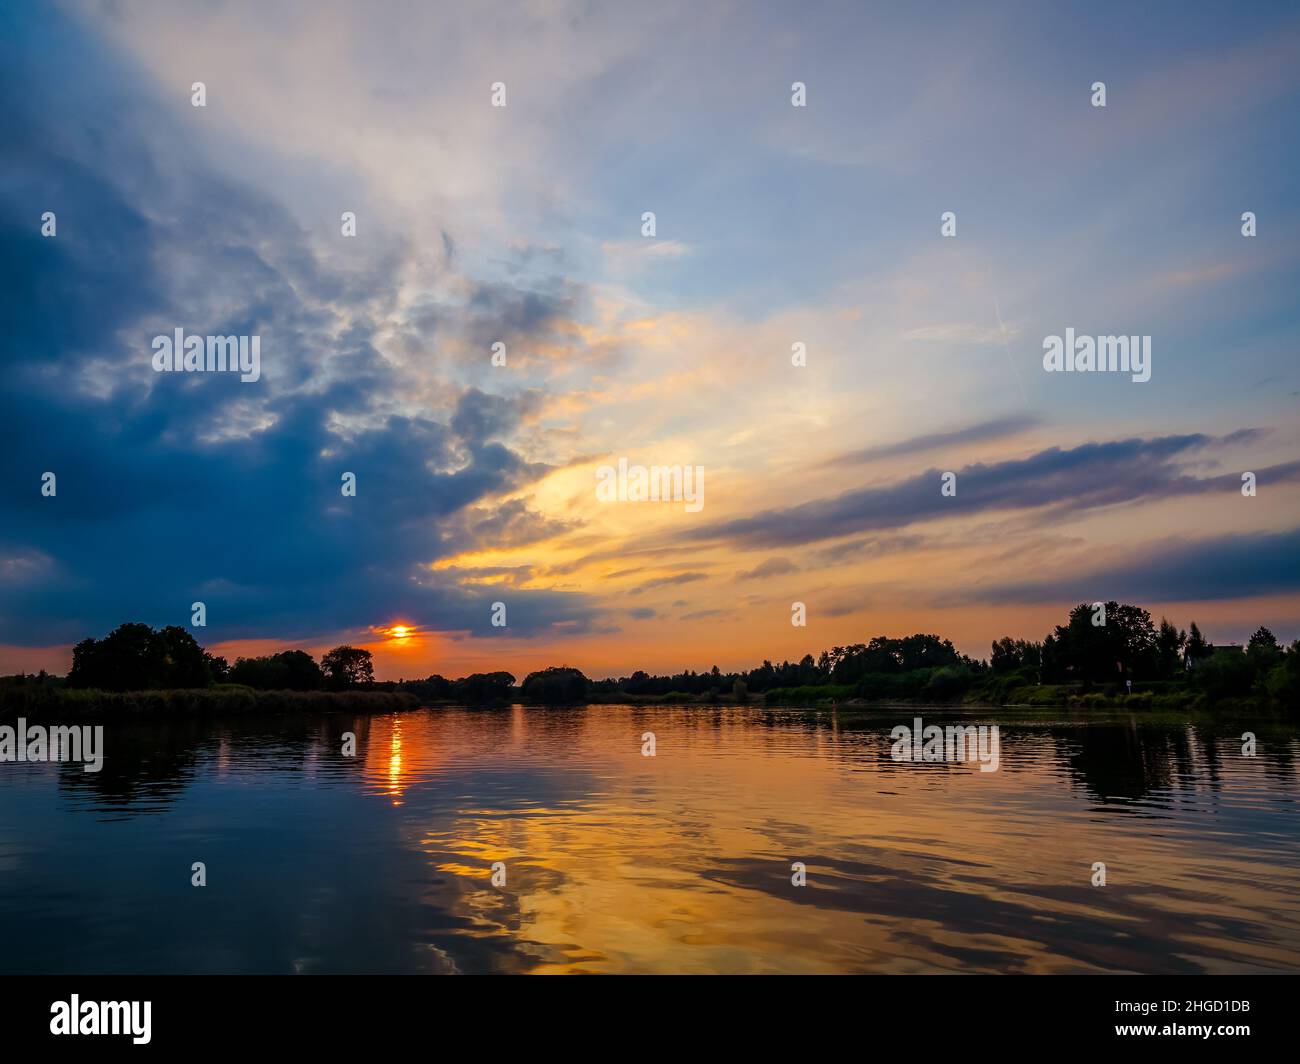 Abendhimmel mit dramatischen Wolken über dem Fluss. Dramatischer Sonnenuntergang in Wolken und Fluss. Naturlandschaft, Reflexion, blauer wolkig Himmel und orange Sonnenlig Stockfoto